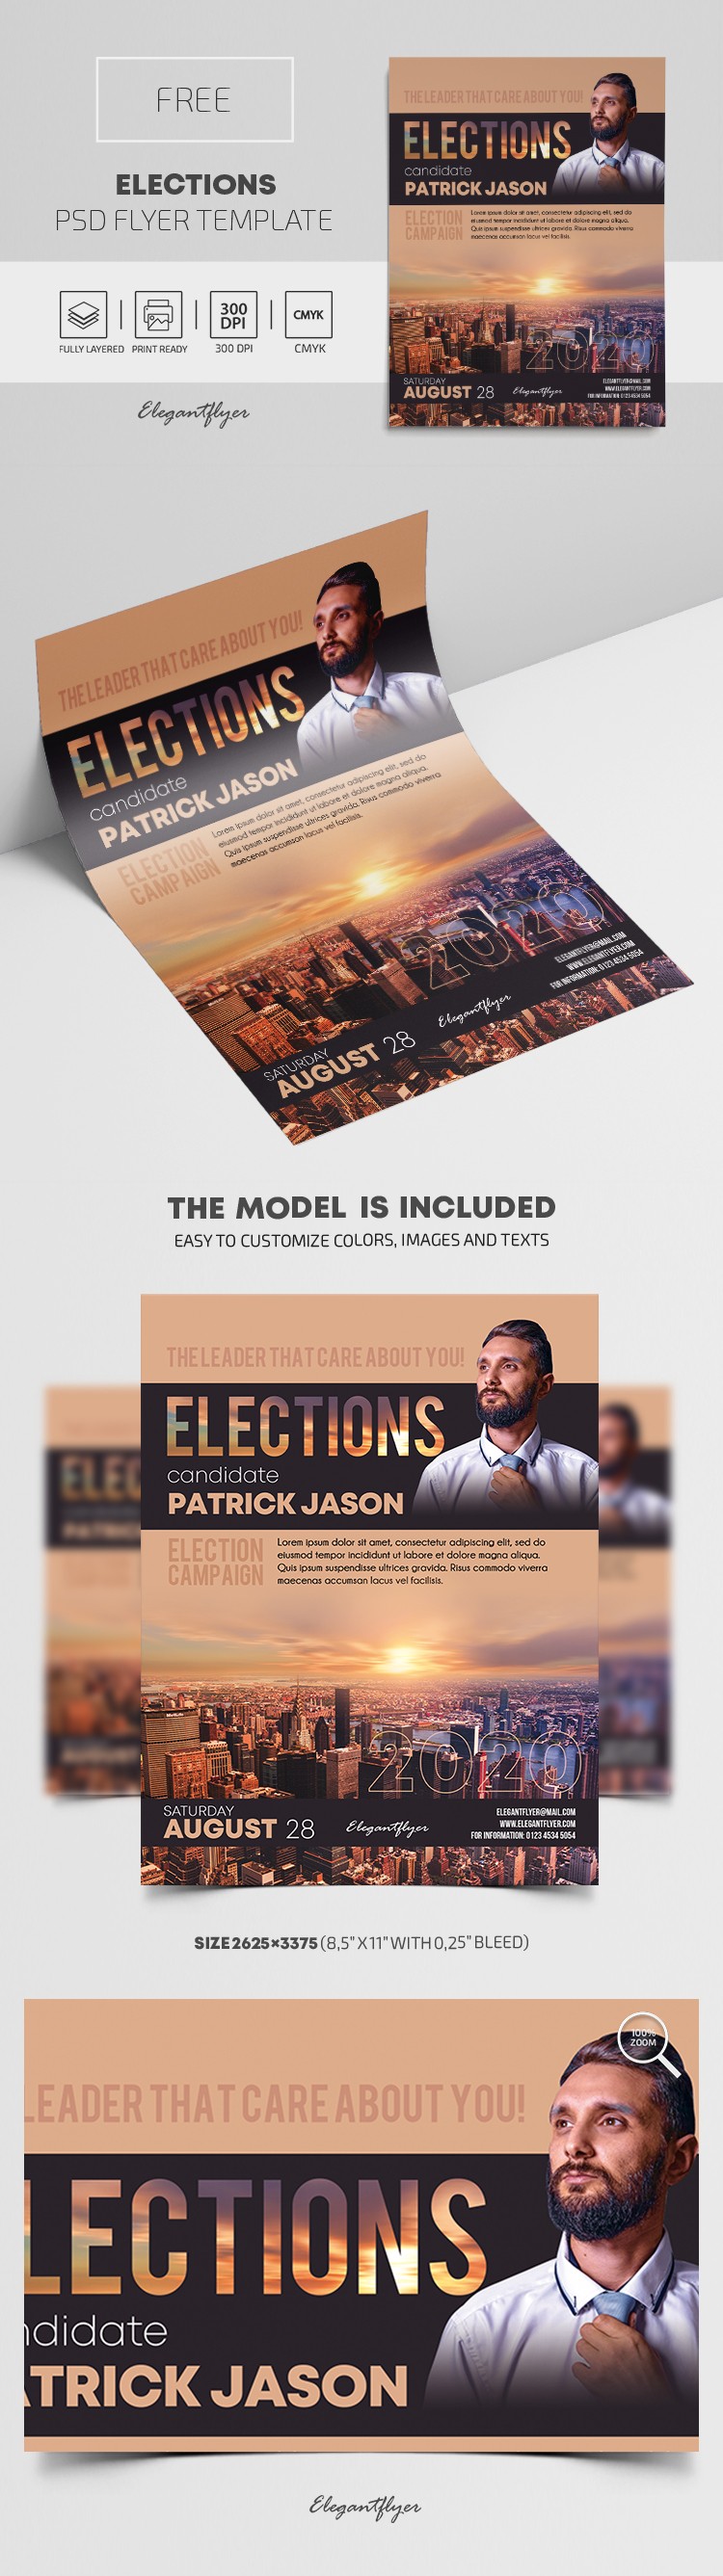 Elections Flyer by ElegantFlyer